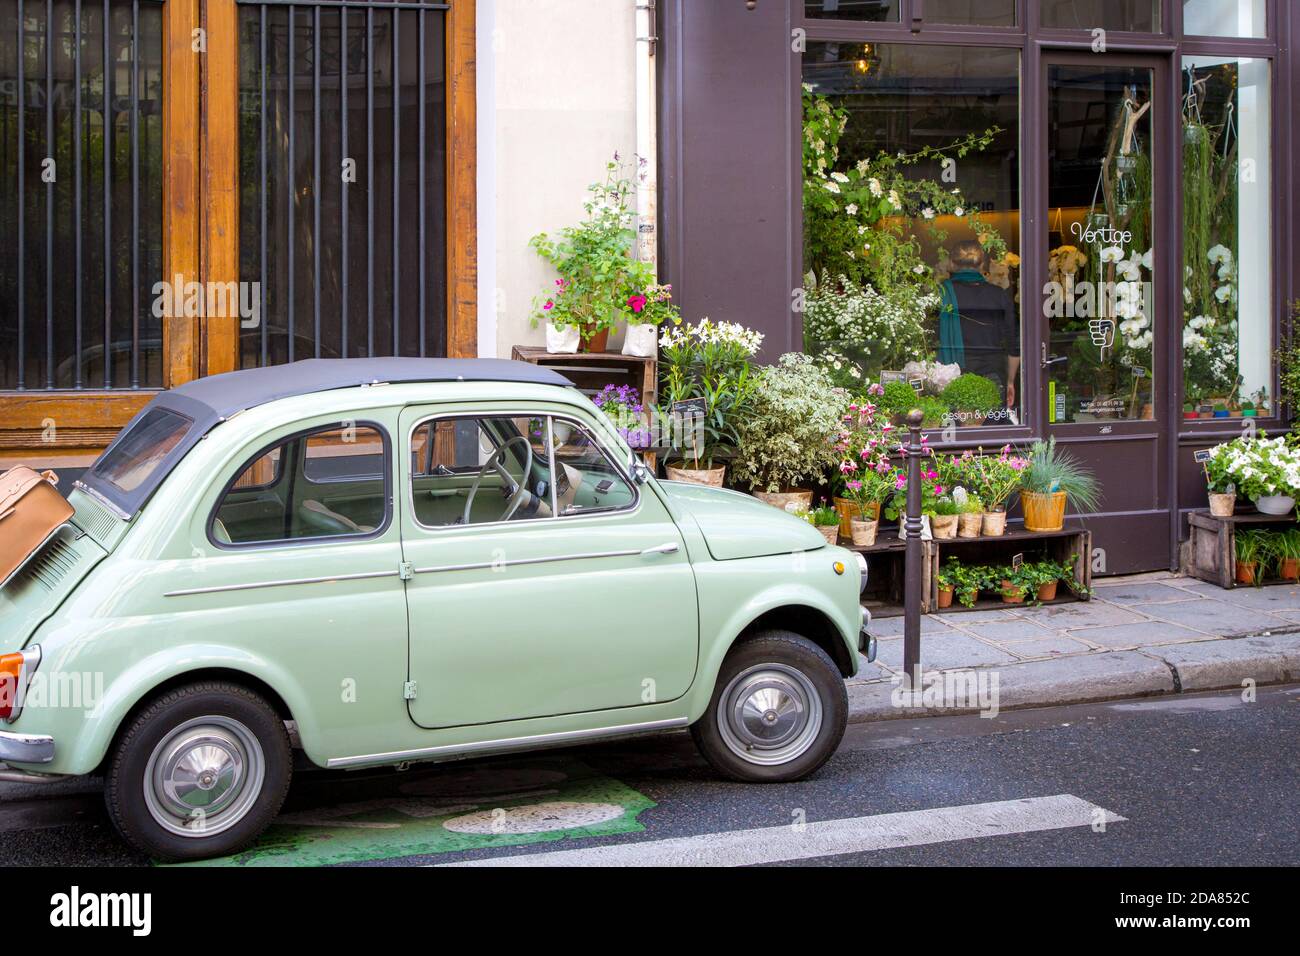 Fiat parked on the sidewalk at the florist shop, Les Marais, Paris, France Stock Photo